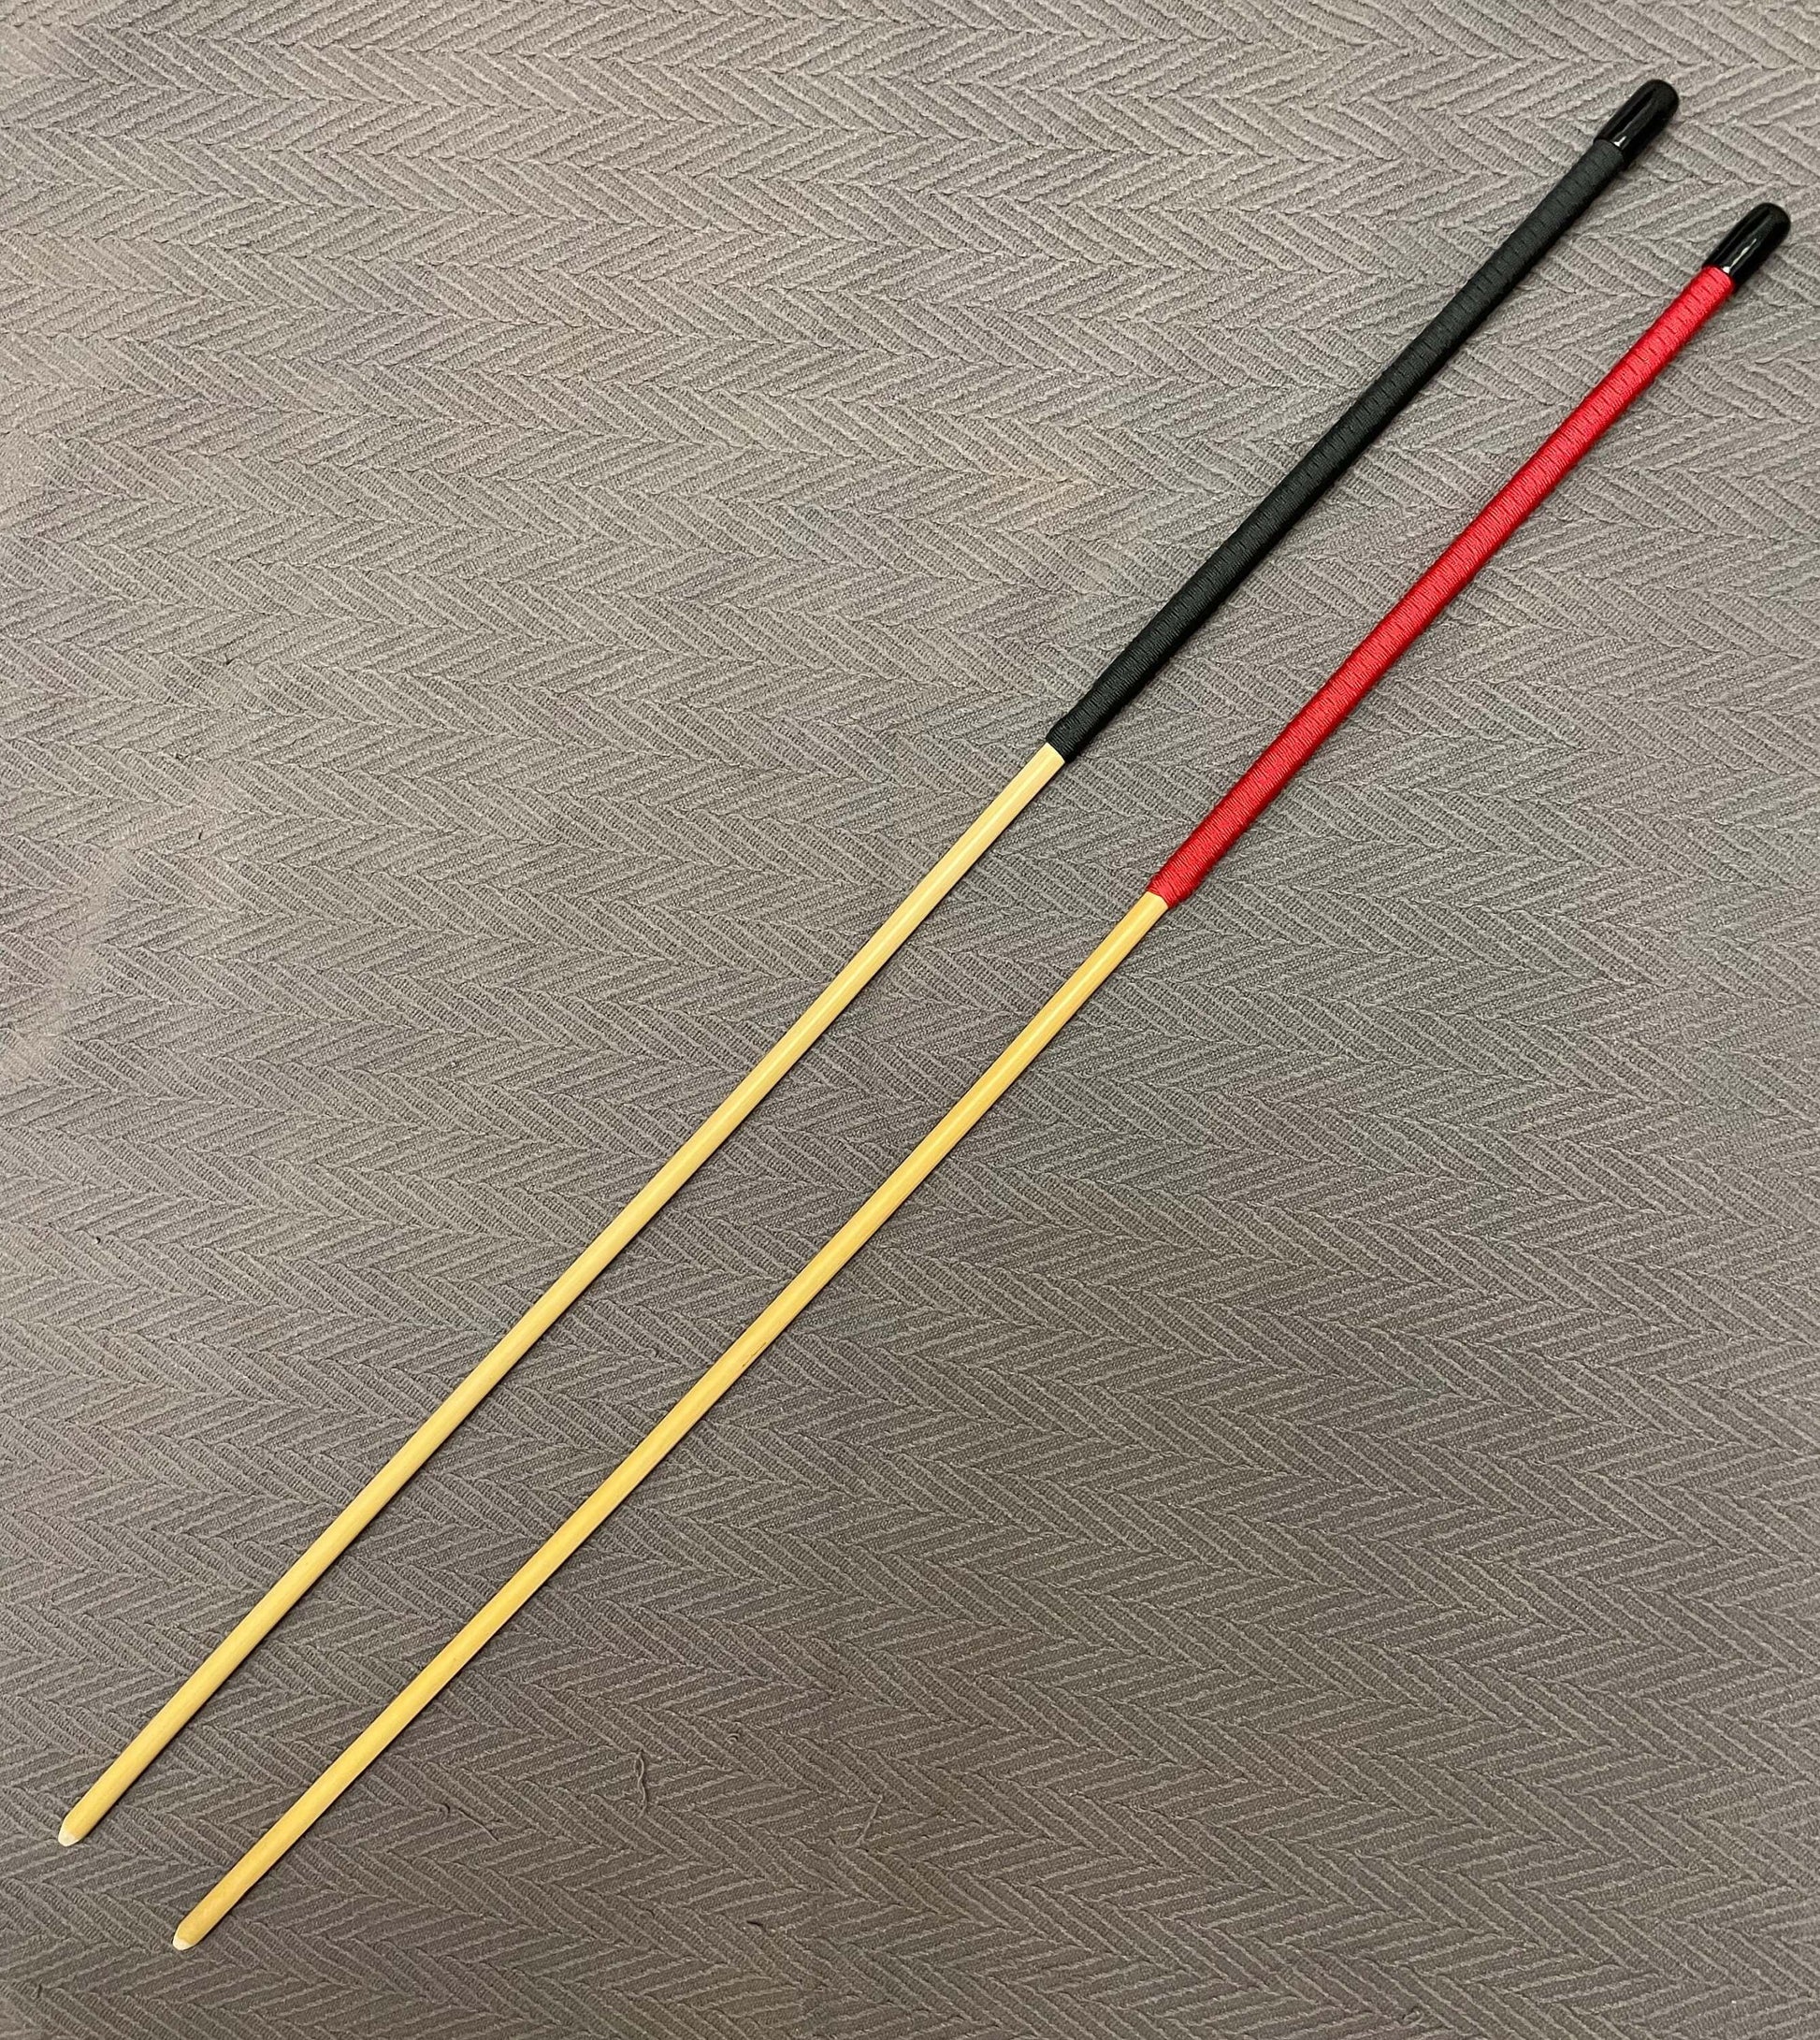 Classic Dragon Canes / Junior Cane / Senior Cane / Reformatory Cane - 90 - 95 cms Length - Red or Black Paracord Handles